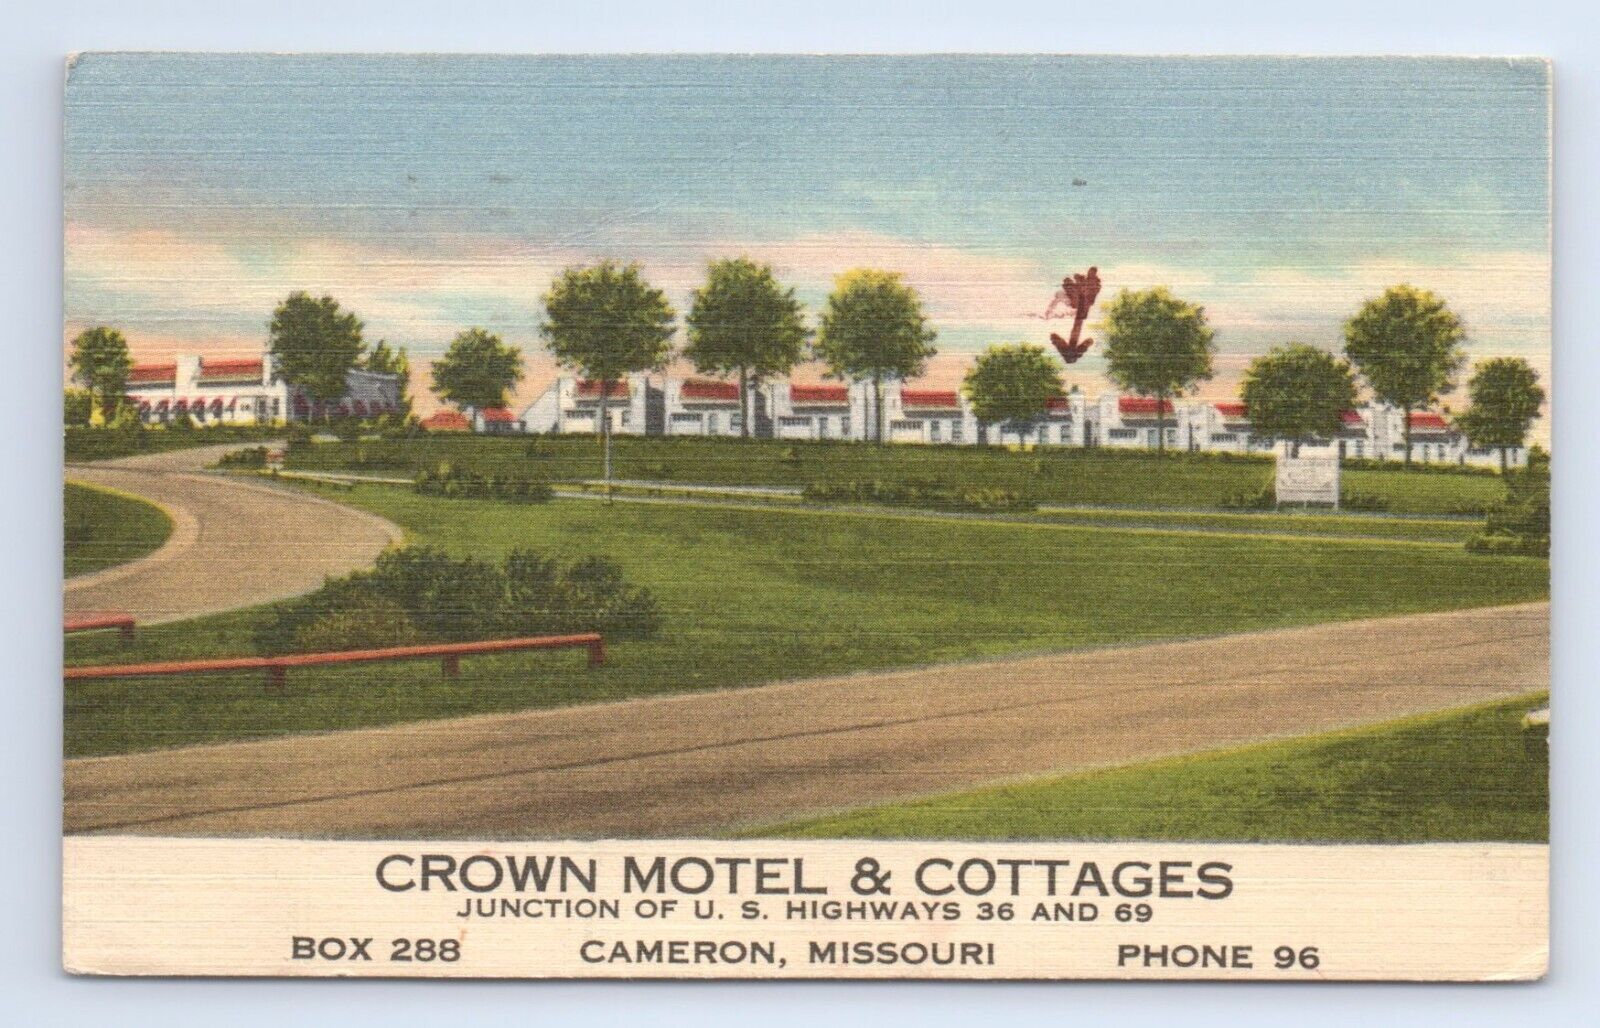 Crown Motel Cottages US 36 69 Cameron Missouri Postcard VTG MO Hotel Motor Court